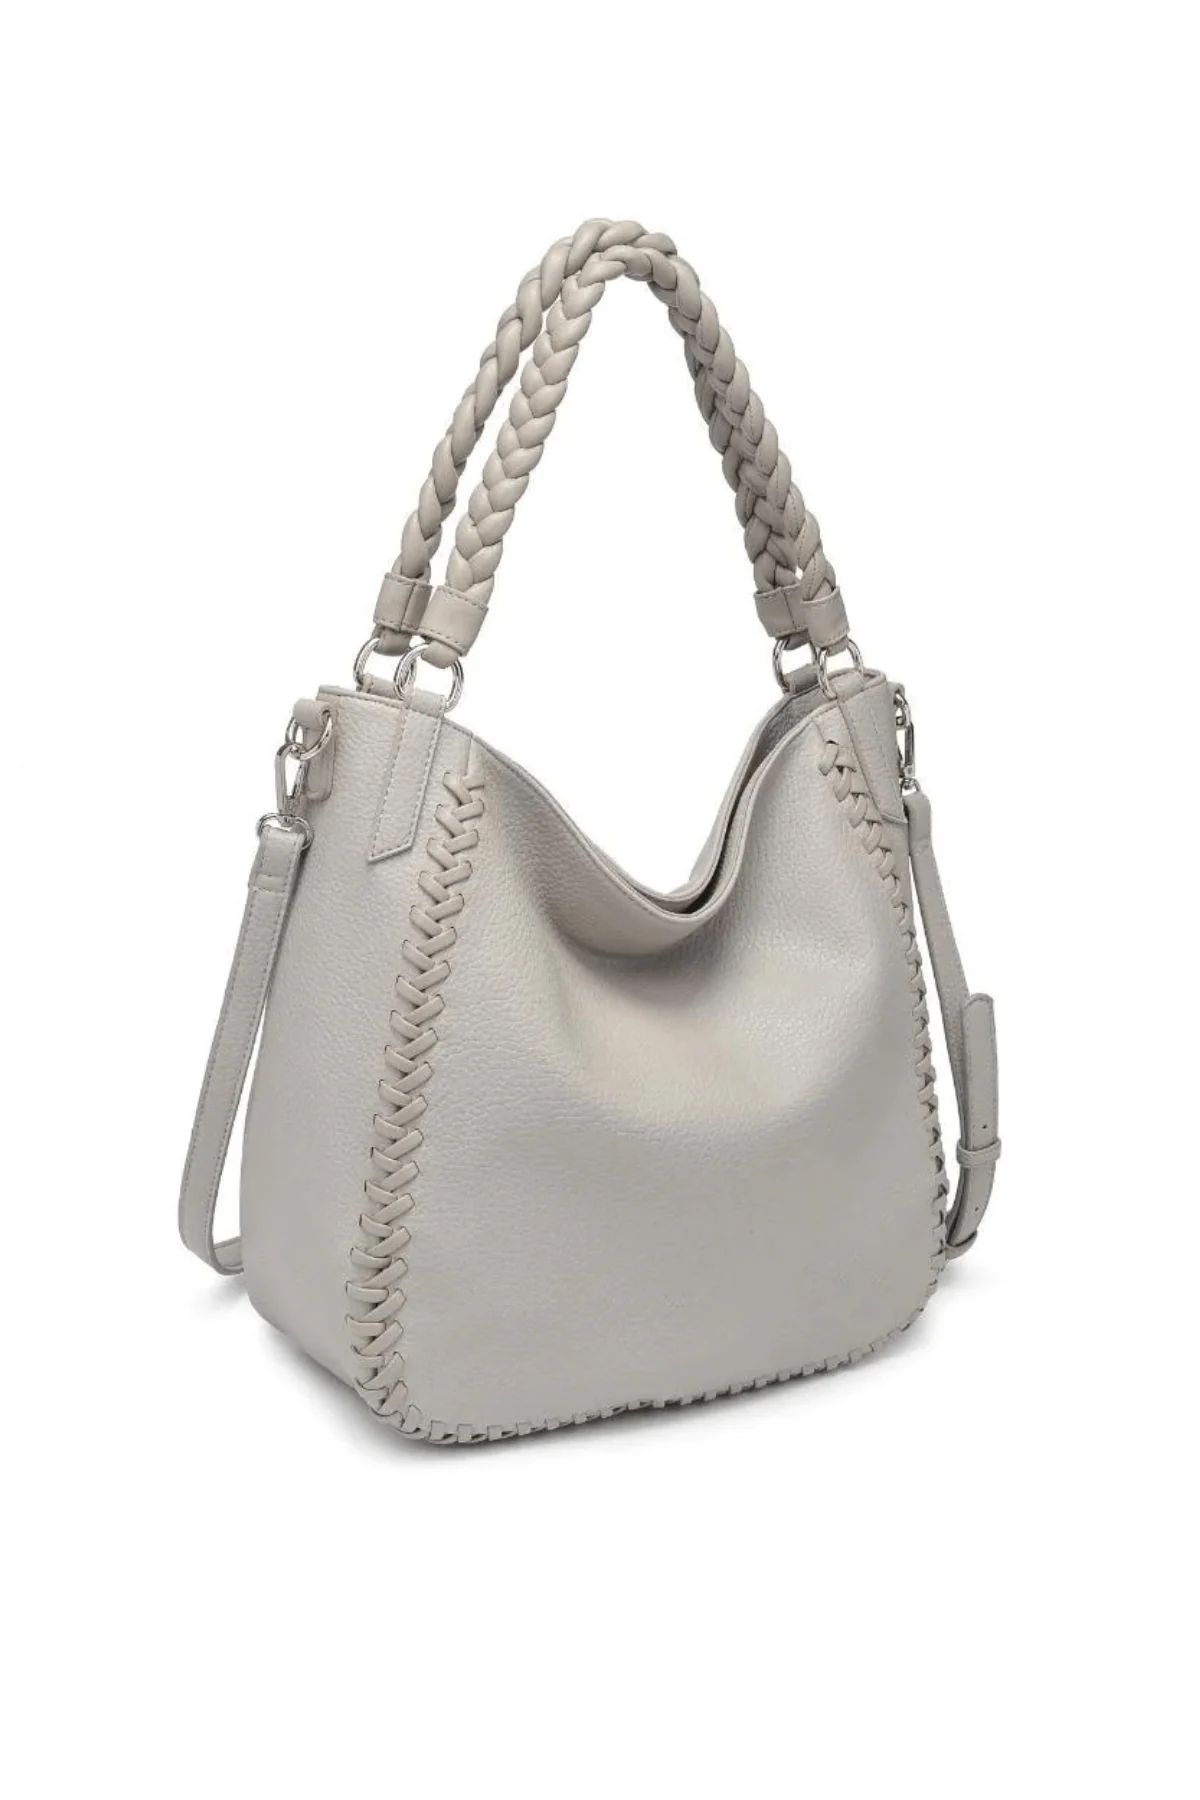 Moda Luxe Luxelle Hobo Bag | Social Threads